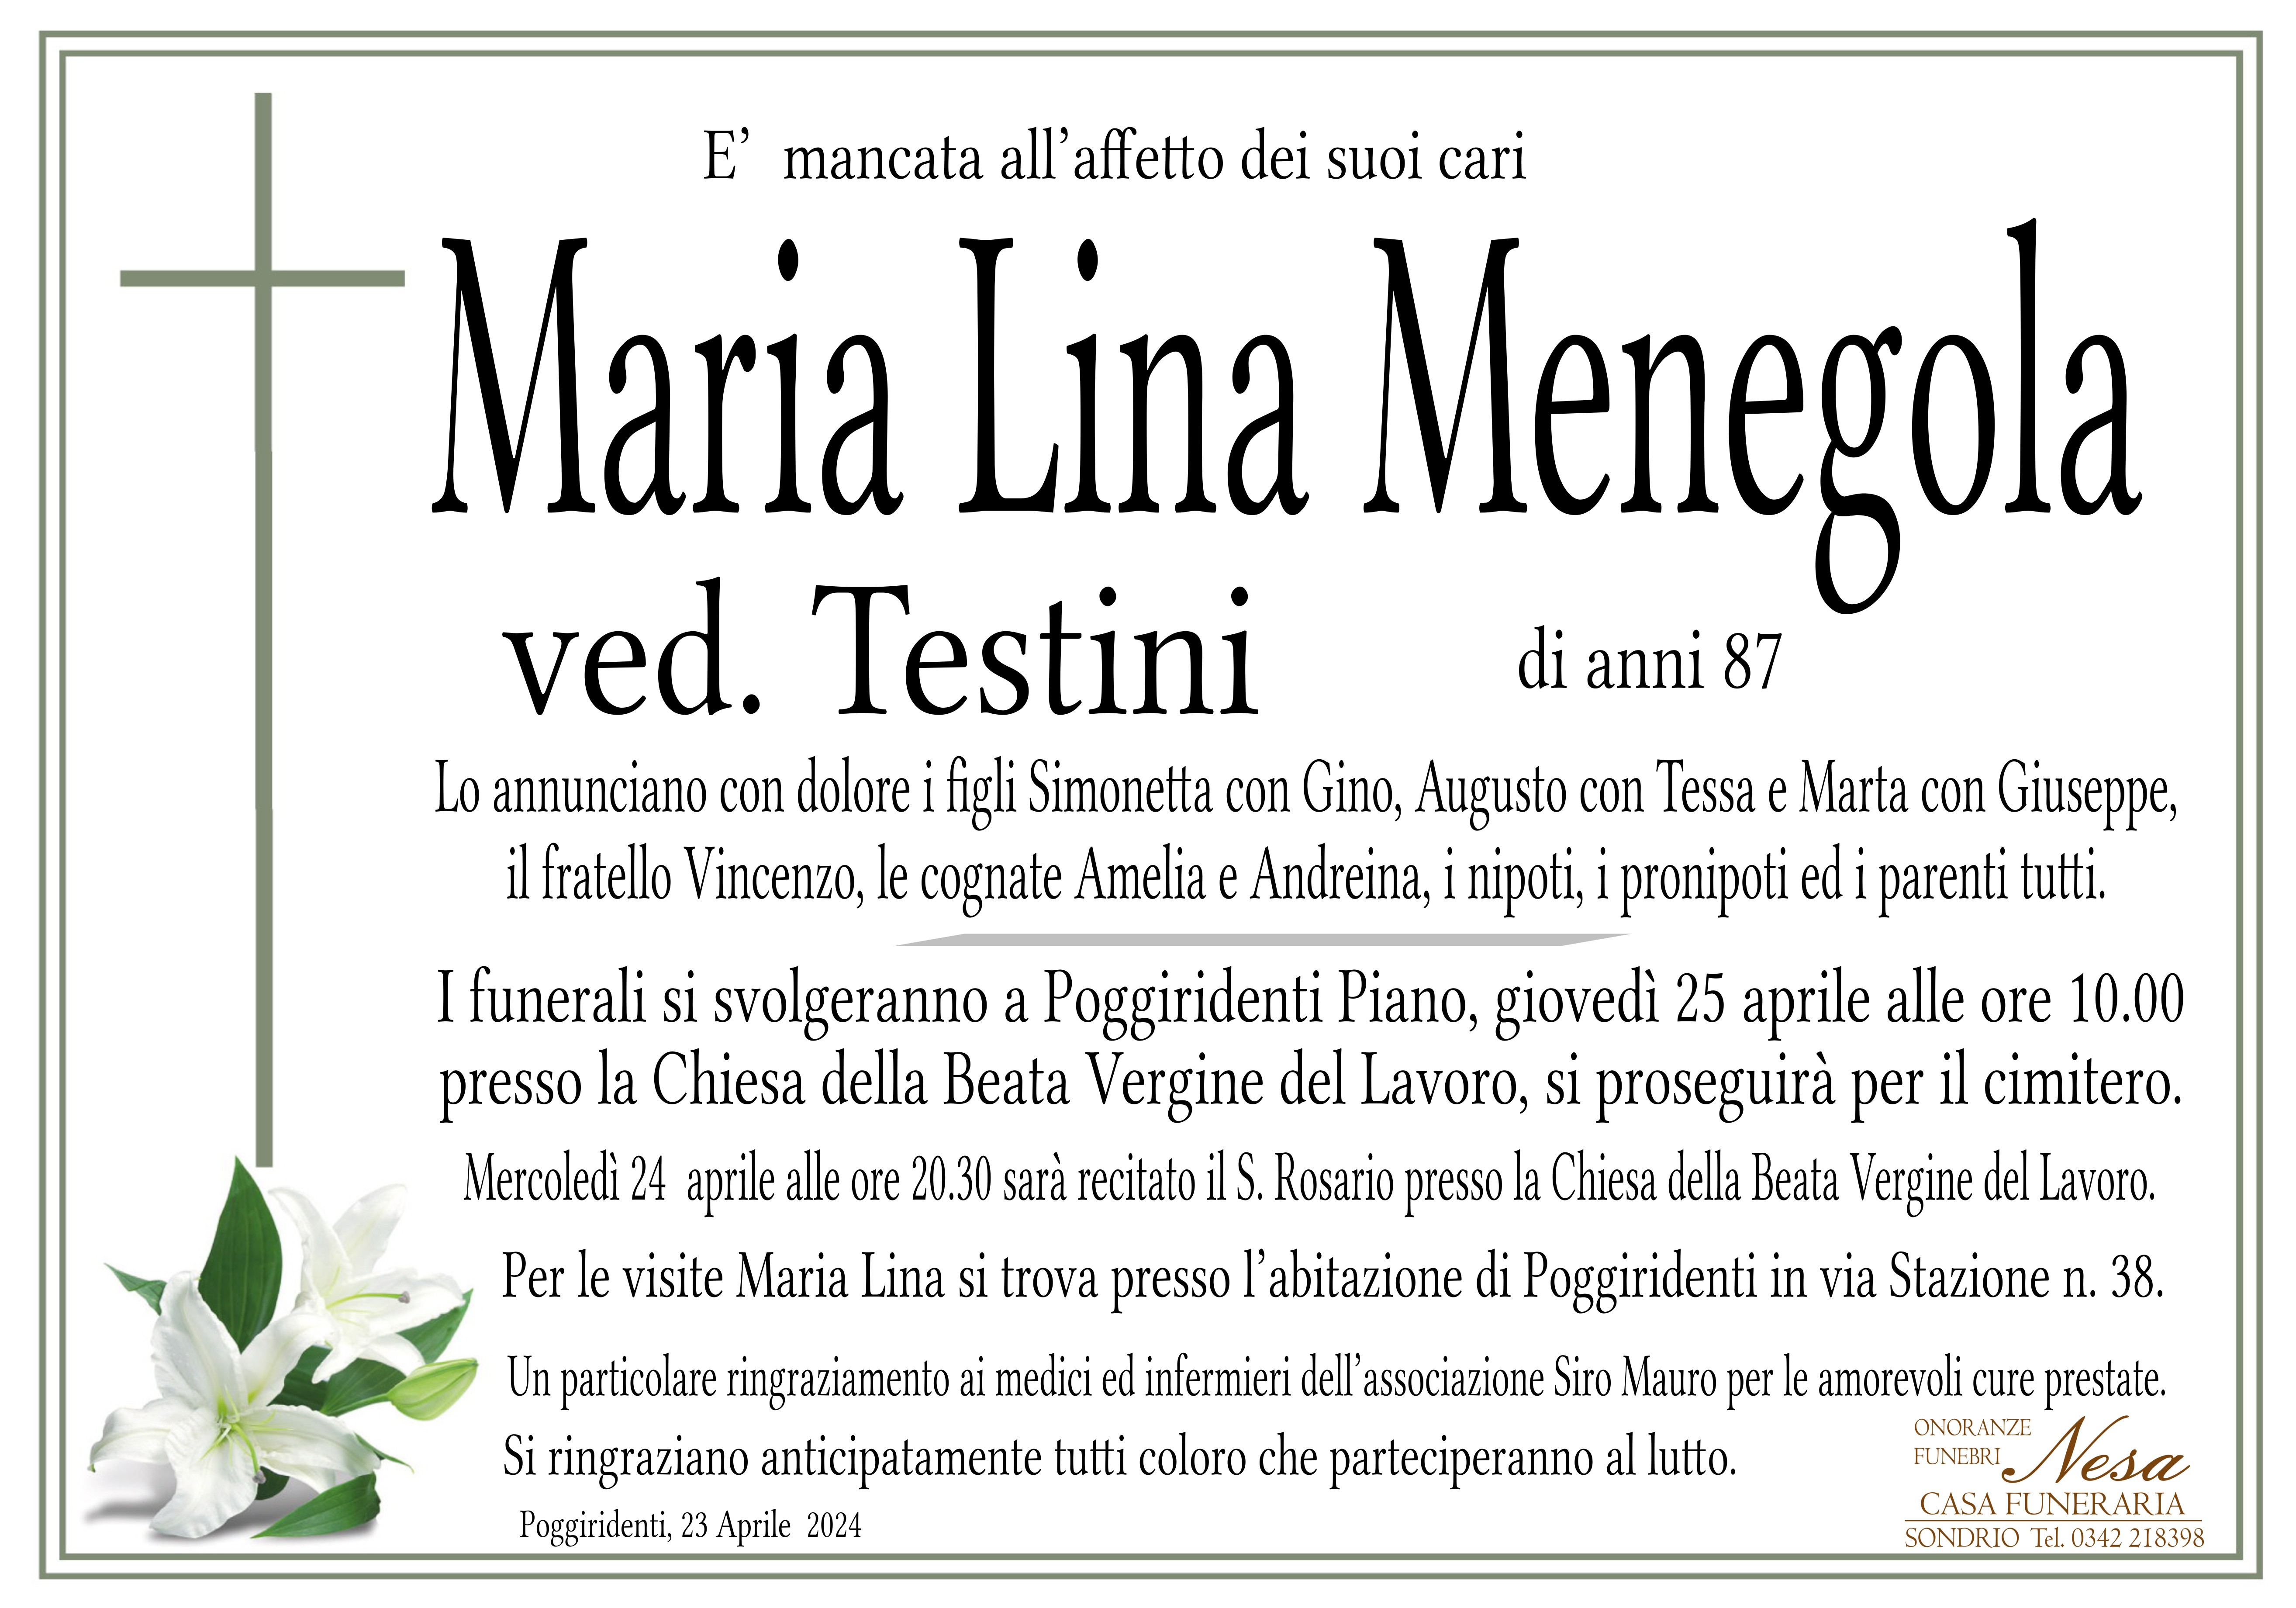 Necrologio Maria Lina Menegola ved. Testini